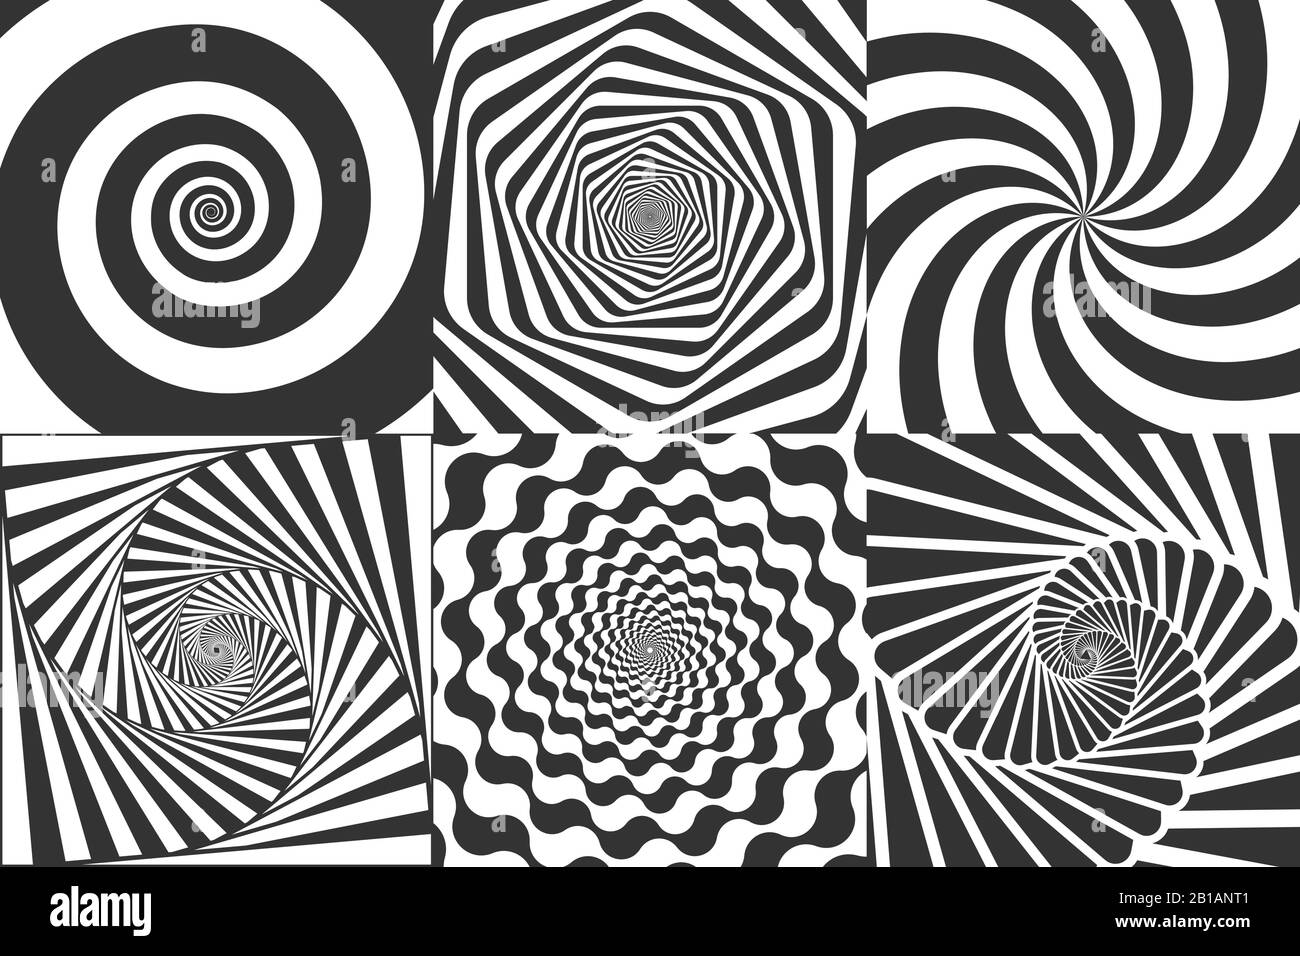 Hypnotische Spirale. Wirbelnde Hypnotise-Spiralen, vertigo geometrische Illusion und rotierende Streifen rund Muster Vektor-Illustration Set Stock Vektor